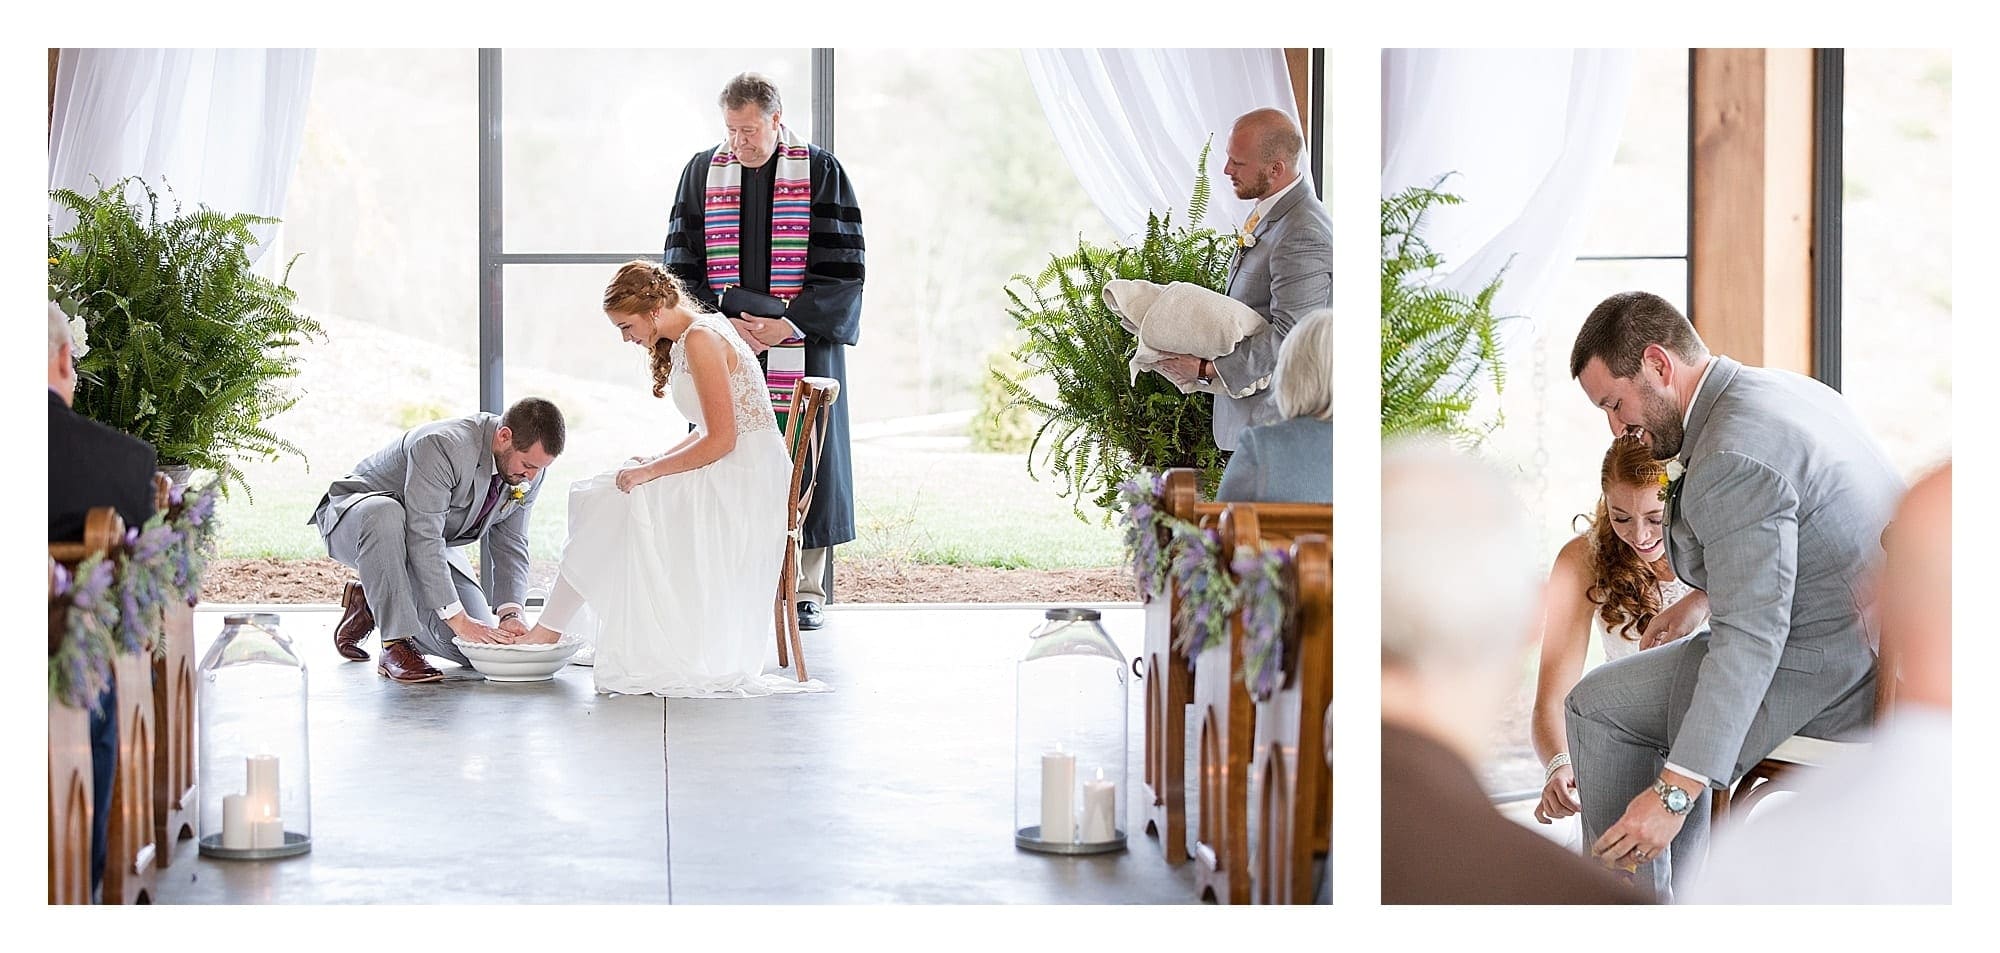 Bride and groom wash feet